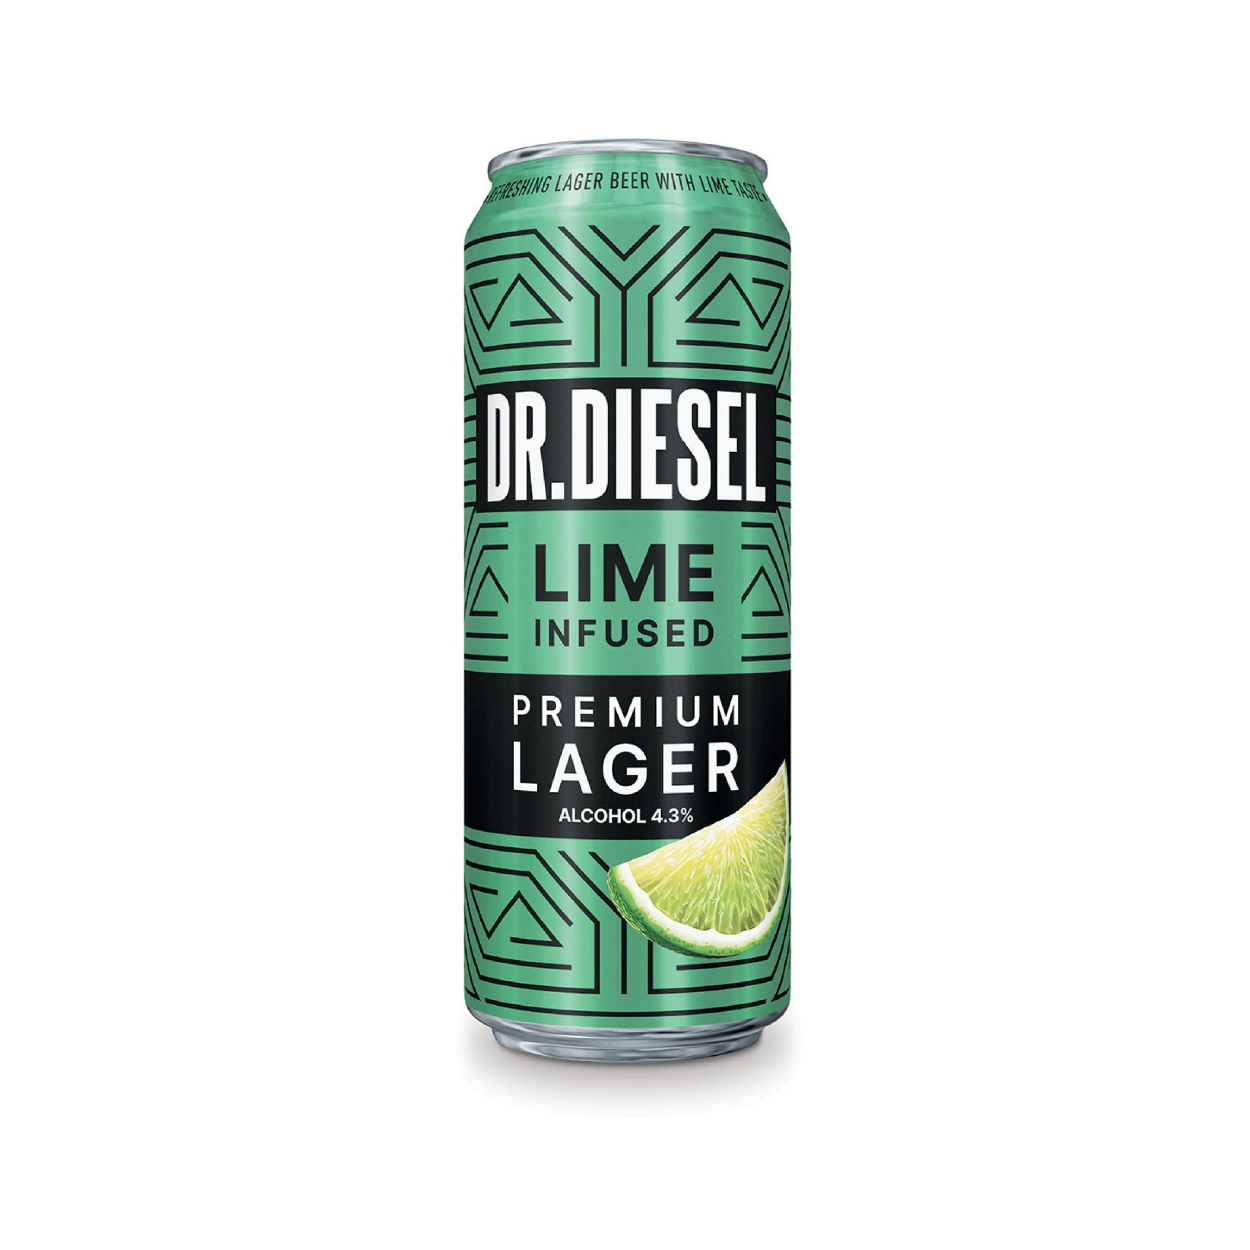 Дизель пиво вкусы. Diesel Premium Lager. Пиво Dr Diesel Premium Lager. Доктор дизель лагер лайм. Пиво Vandal Premium Lager.